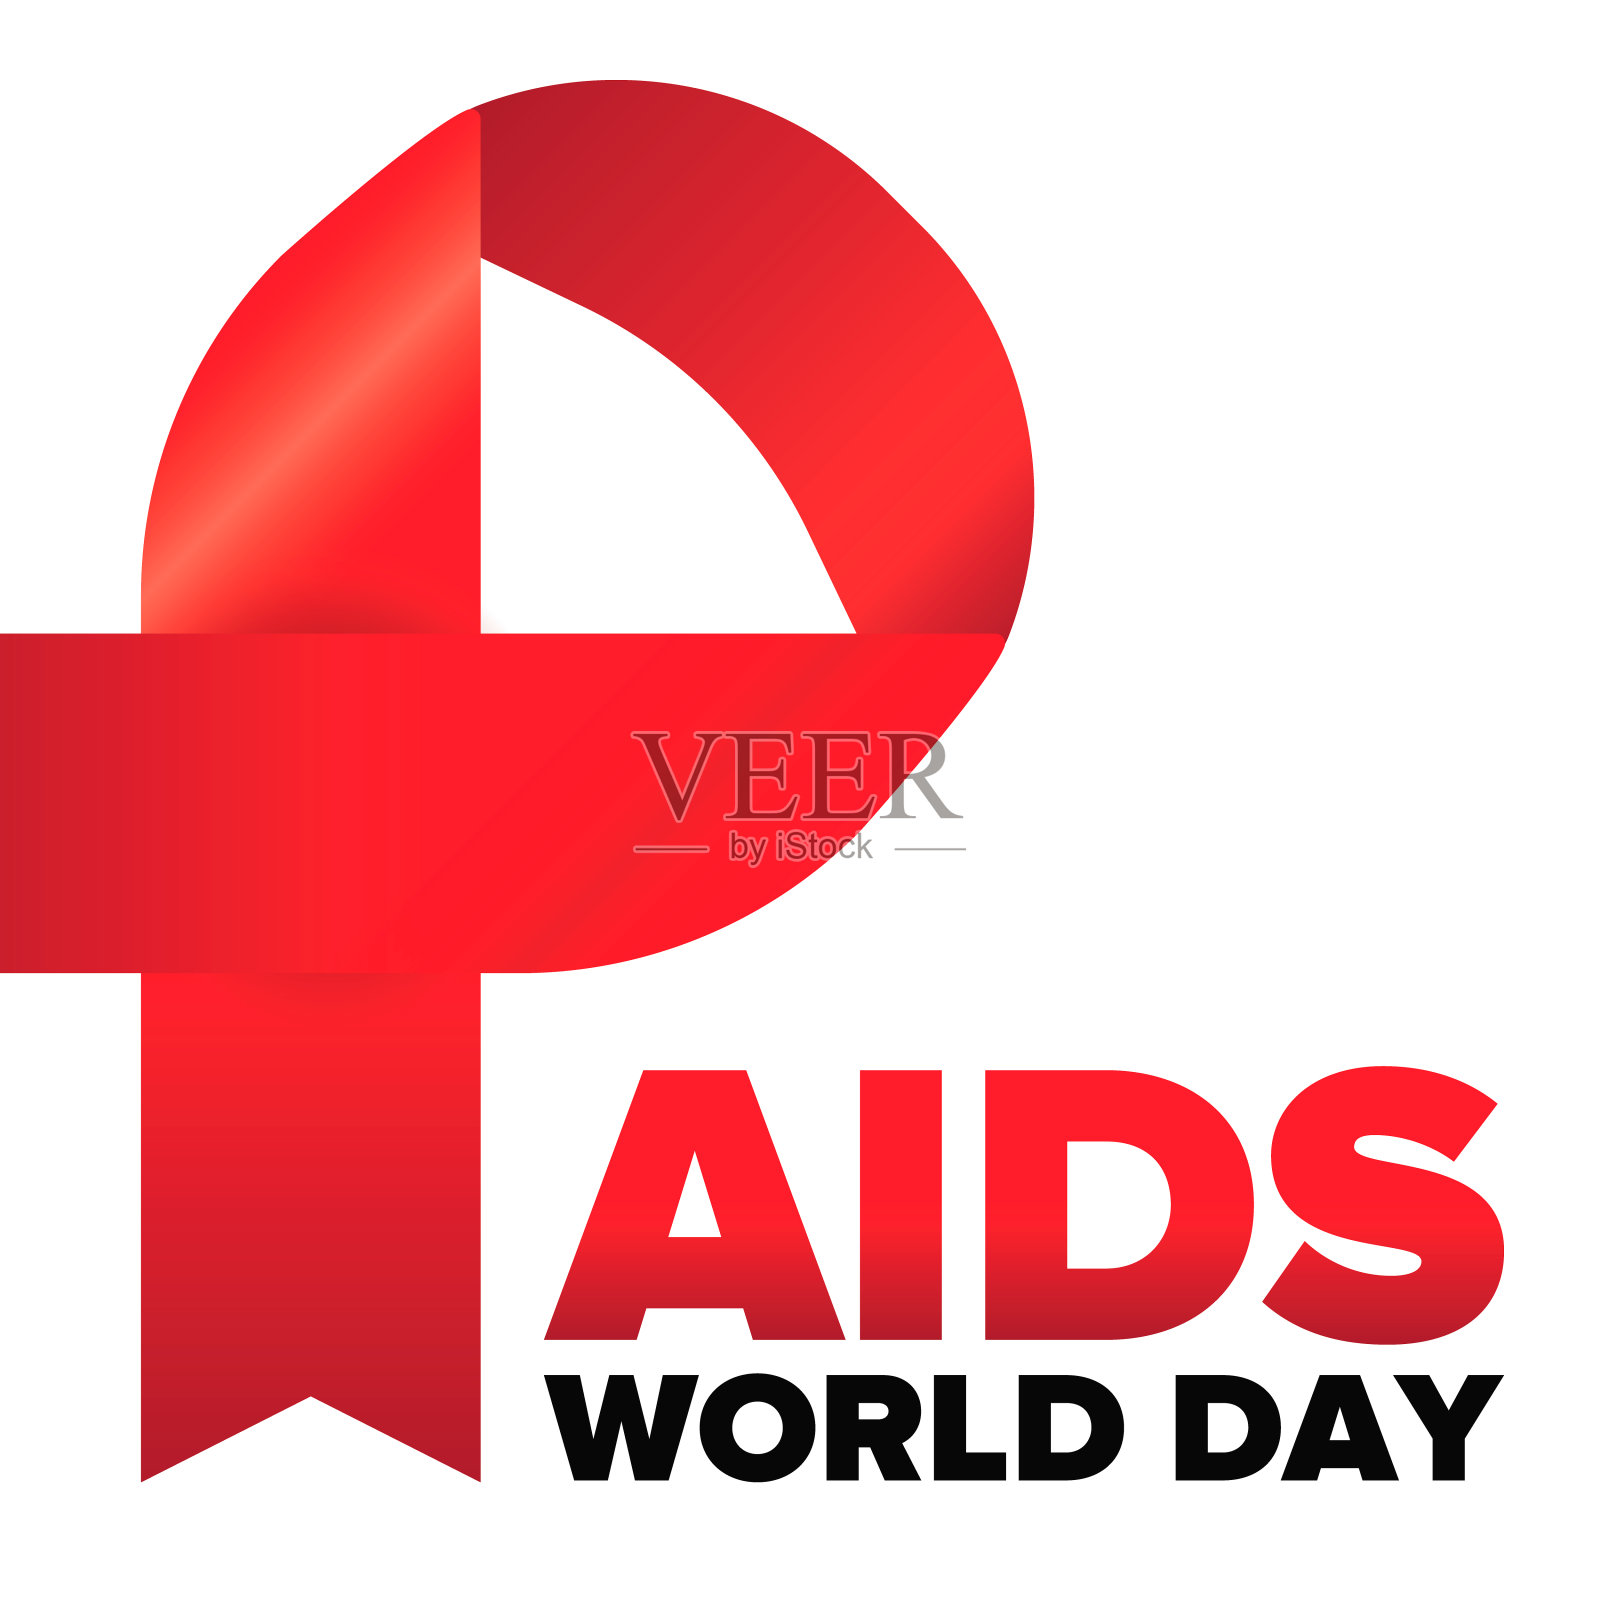 预防艾滋病logo设计图片